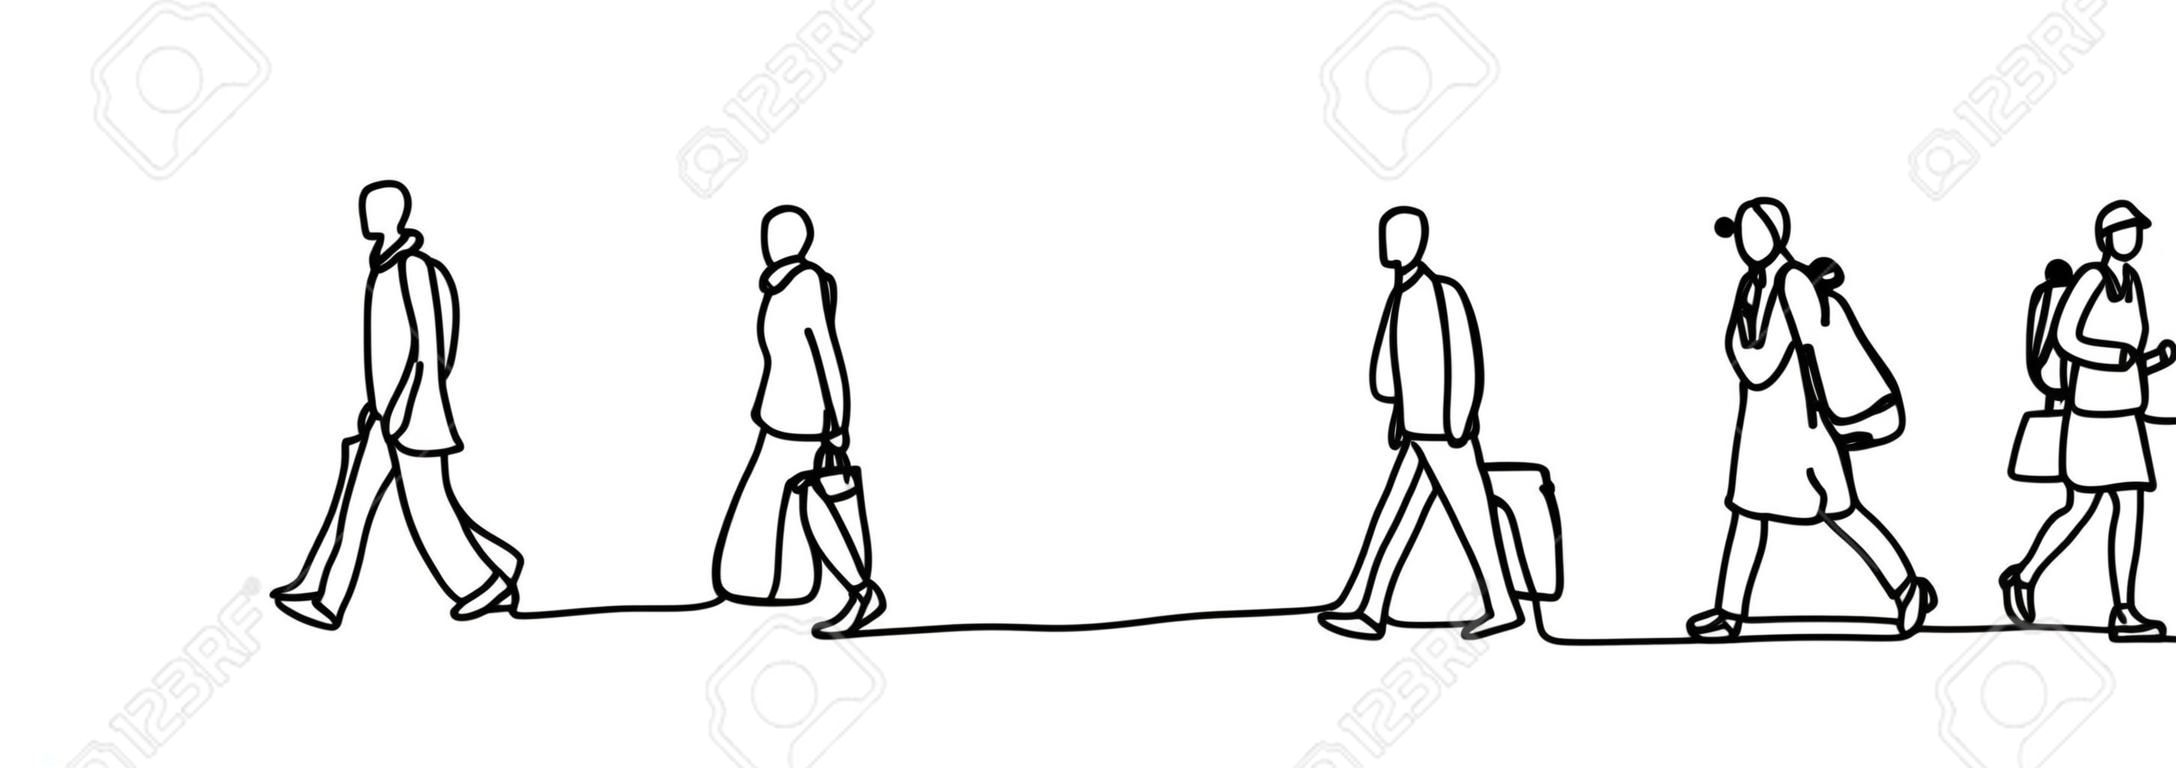 都市通勤者1本の連続線描きミニマリズムデザインスケッチ手描きベクトルイラスト。仕事の前または後に歩く人々。